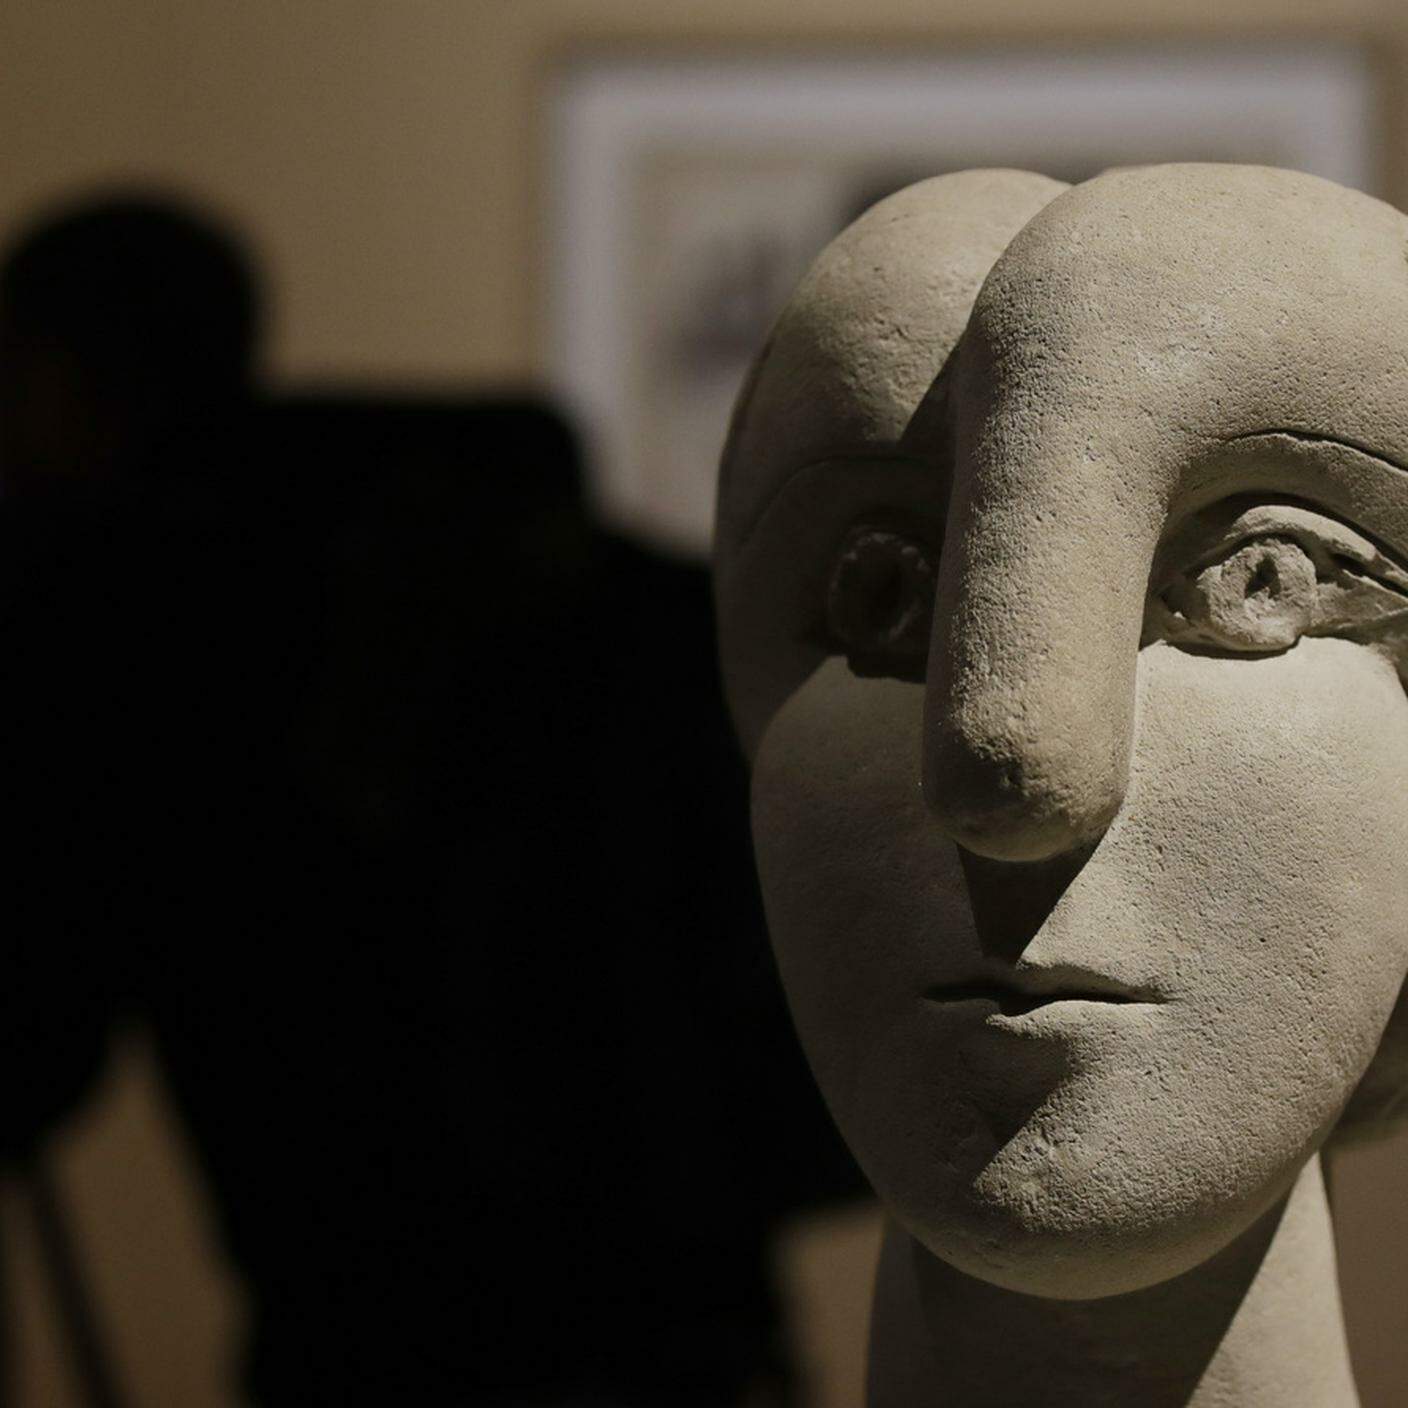 Keystone: "Busto di Donna" di Pablo Picasso, esposto nella Mostra "Picasso Metamorfosi" al palazzo Reale di Milano